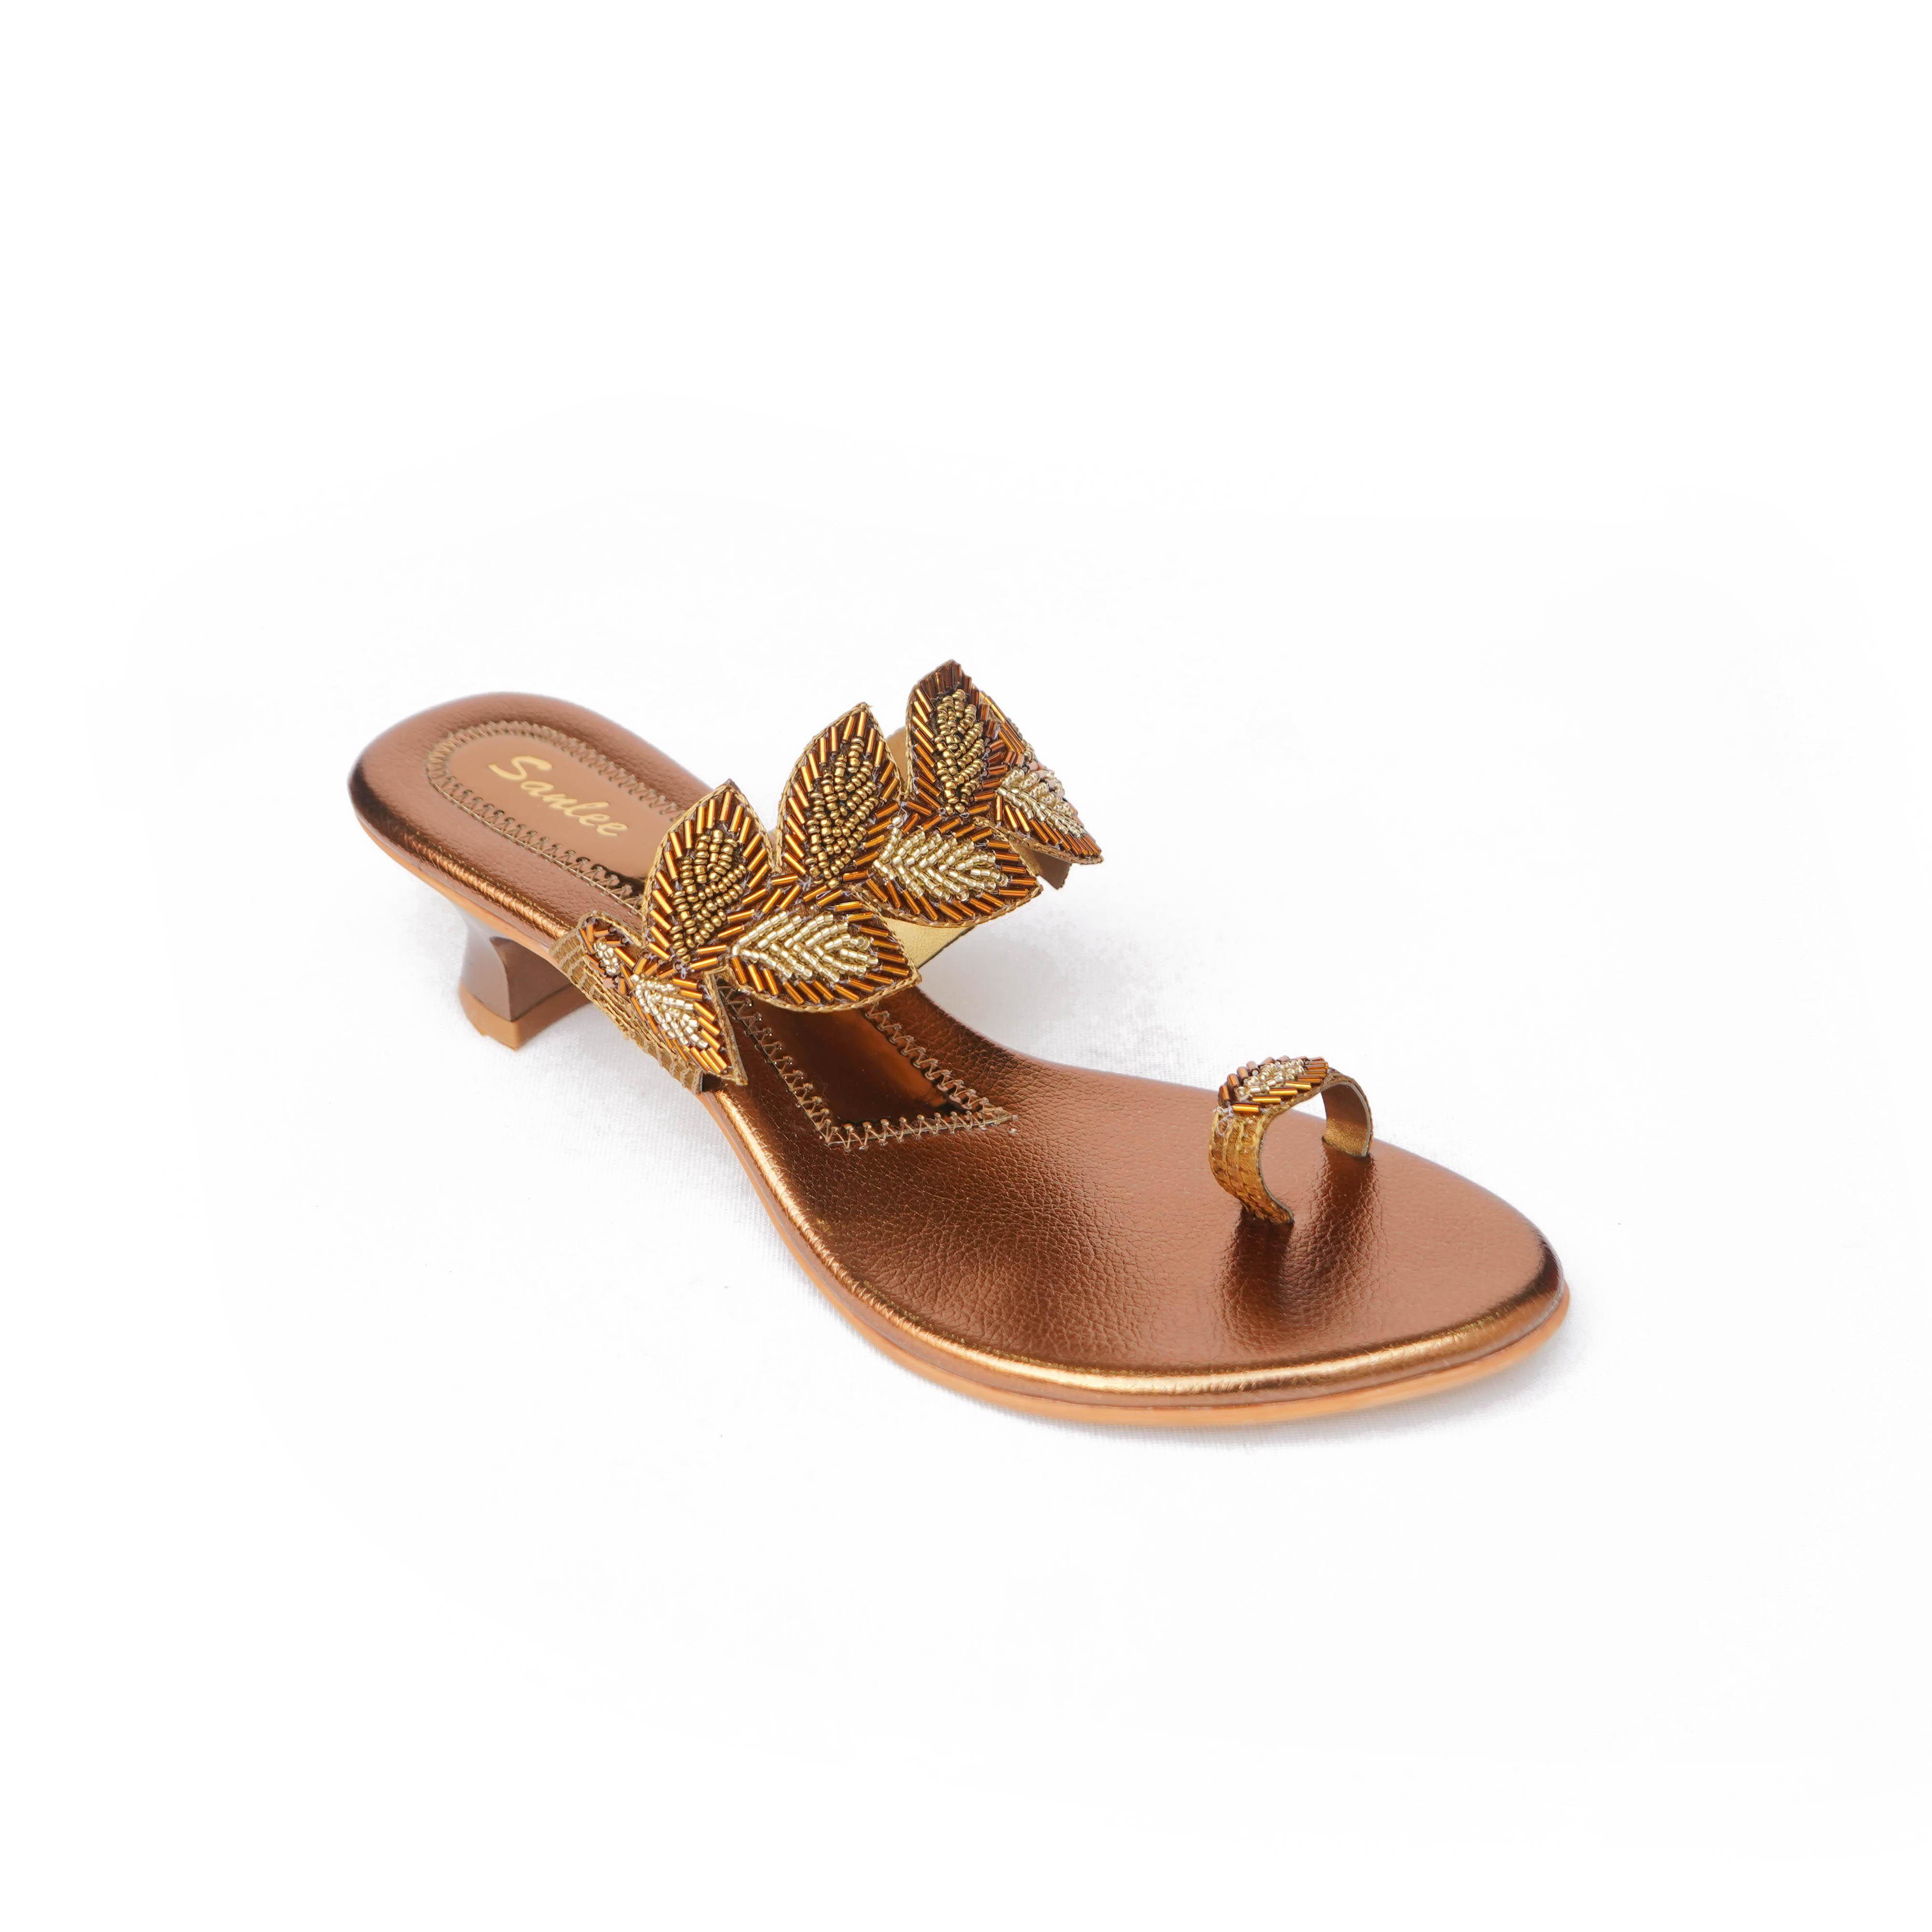 Buy Women Rose-Gold Wedding Sandals Online | Walkway Shoes